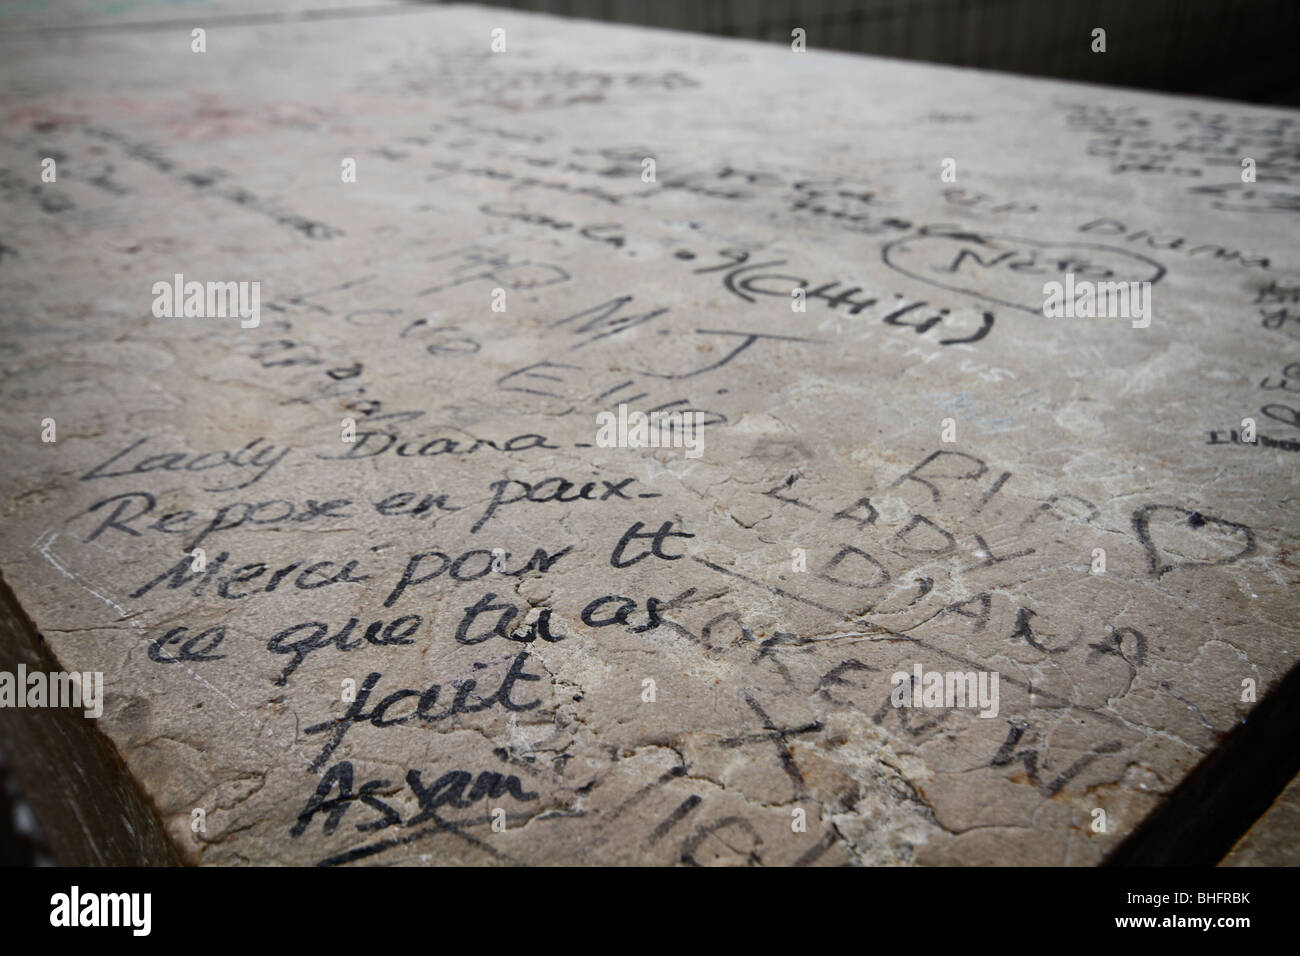 Los diversos mensajes de amor y respeto por la izquierda dolientes en la escena donde la Princesa Diana murió, el Pont de l'Alma túnel. Foto de stock